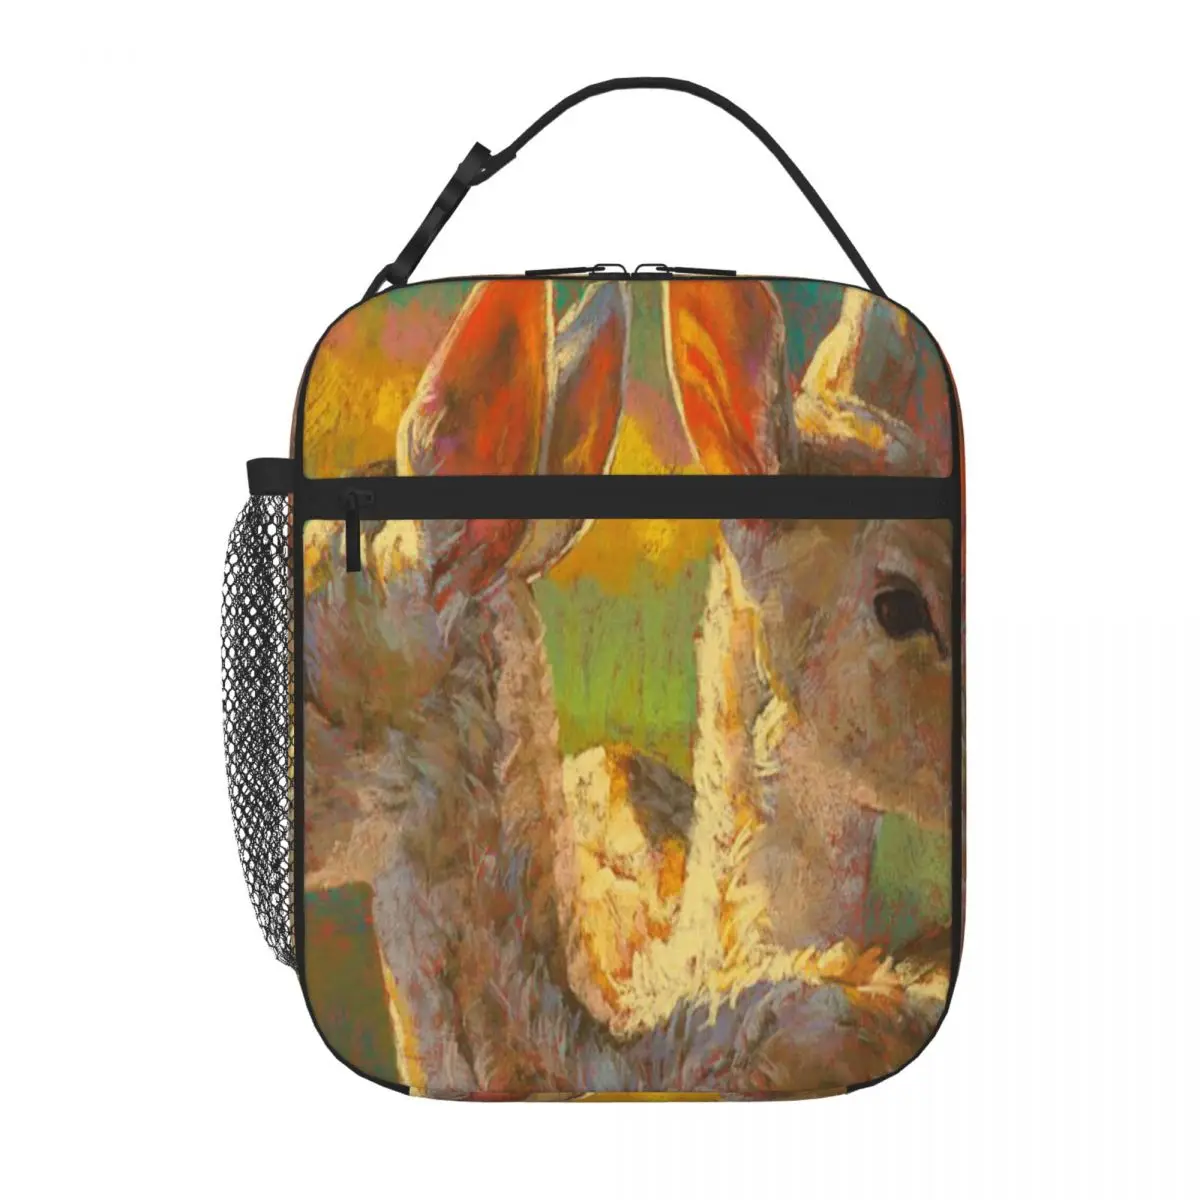 

Двойные краны Рита кирман сумка для ланча Термосумка сумка для ланча маленькая Термосумка